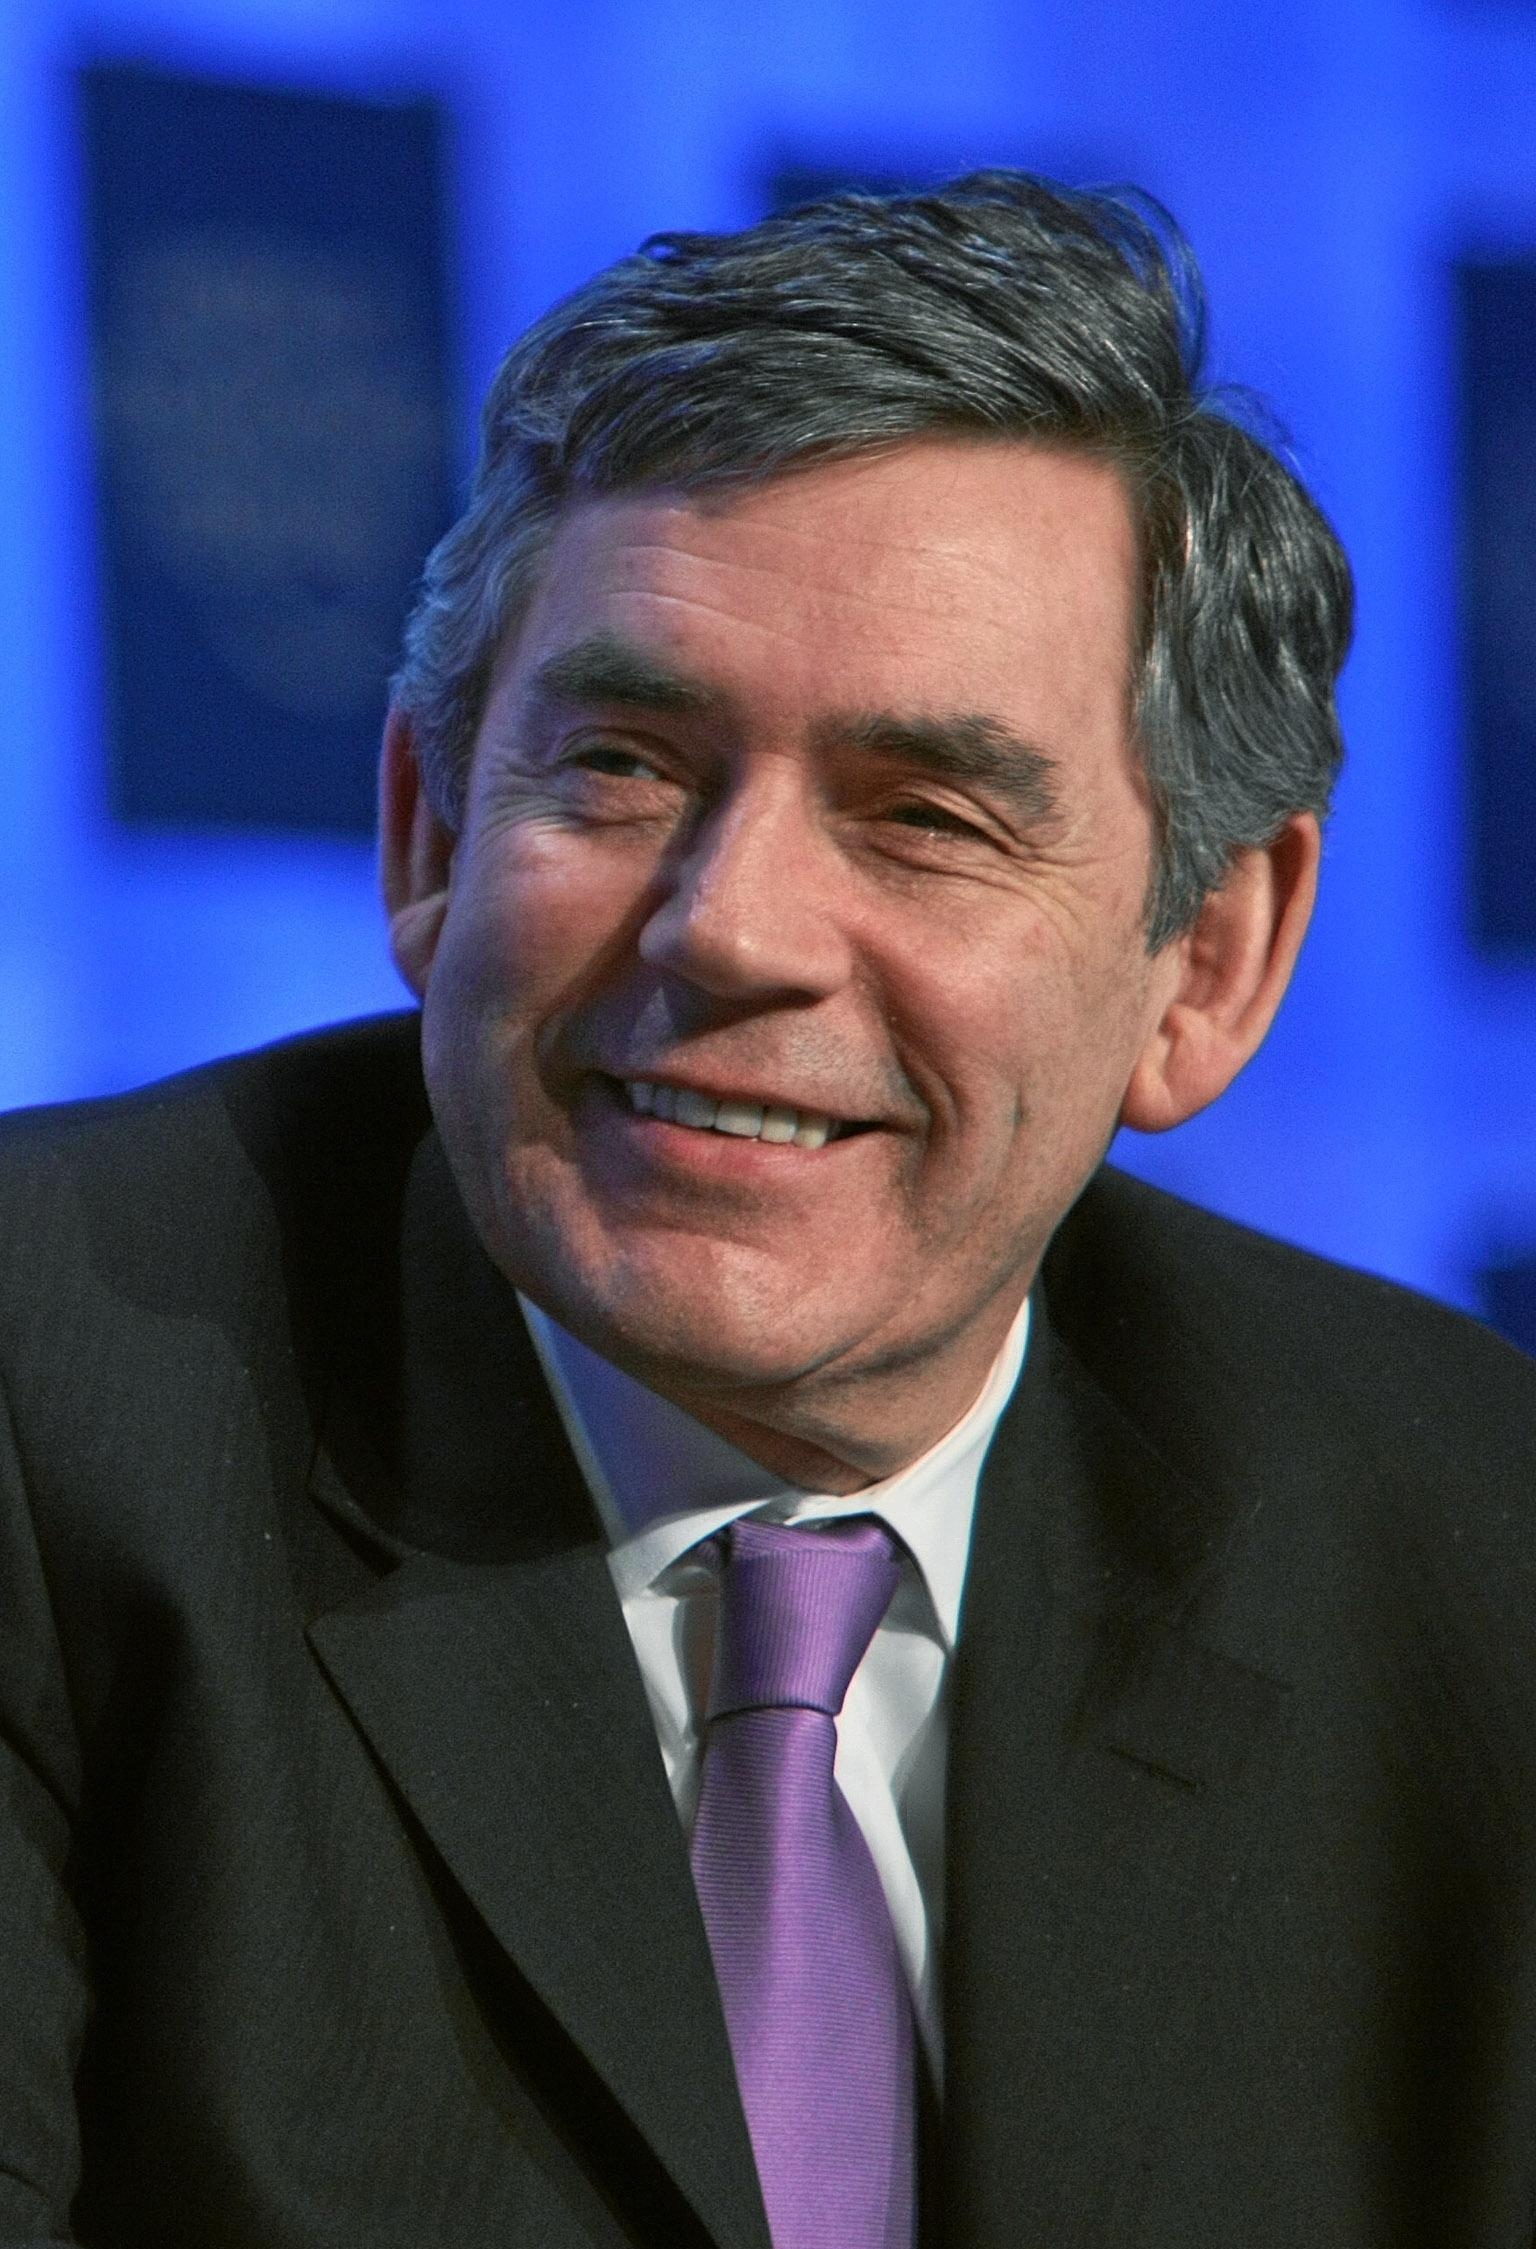 Джеймс Гордон Браун (1951) - британский (шотландский) политик, лейборист, 74-й премьер-министр Великобритании с 2007 по 2010 год